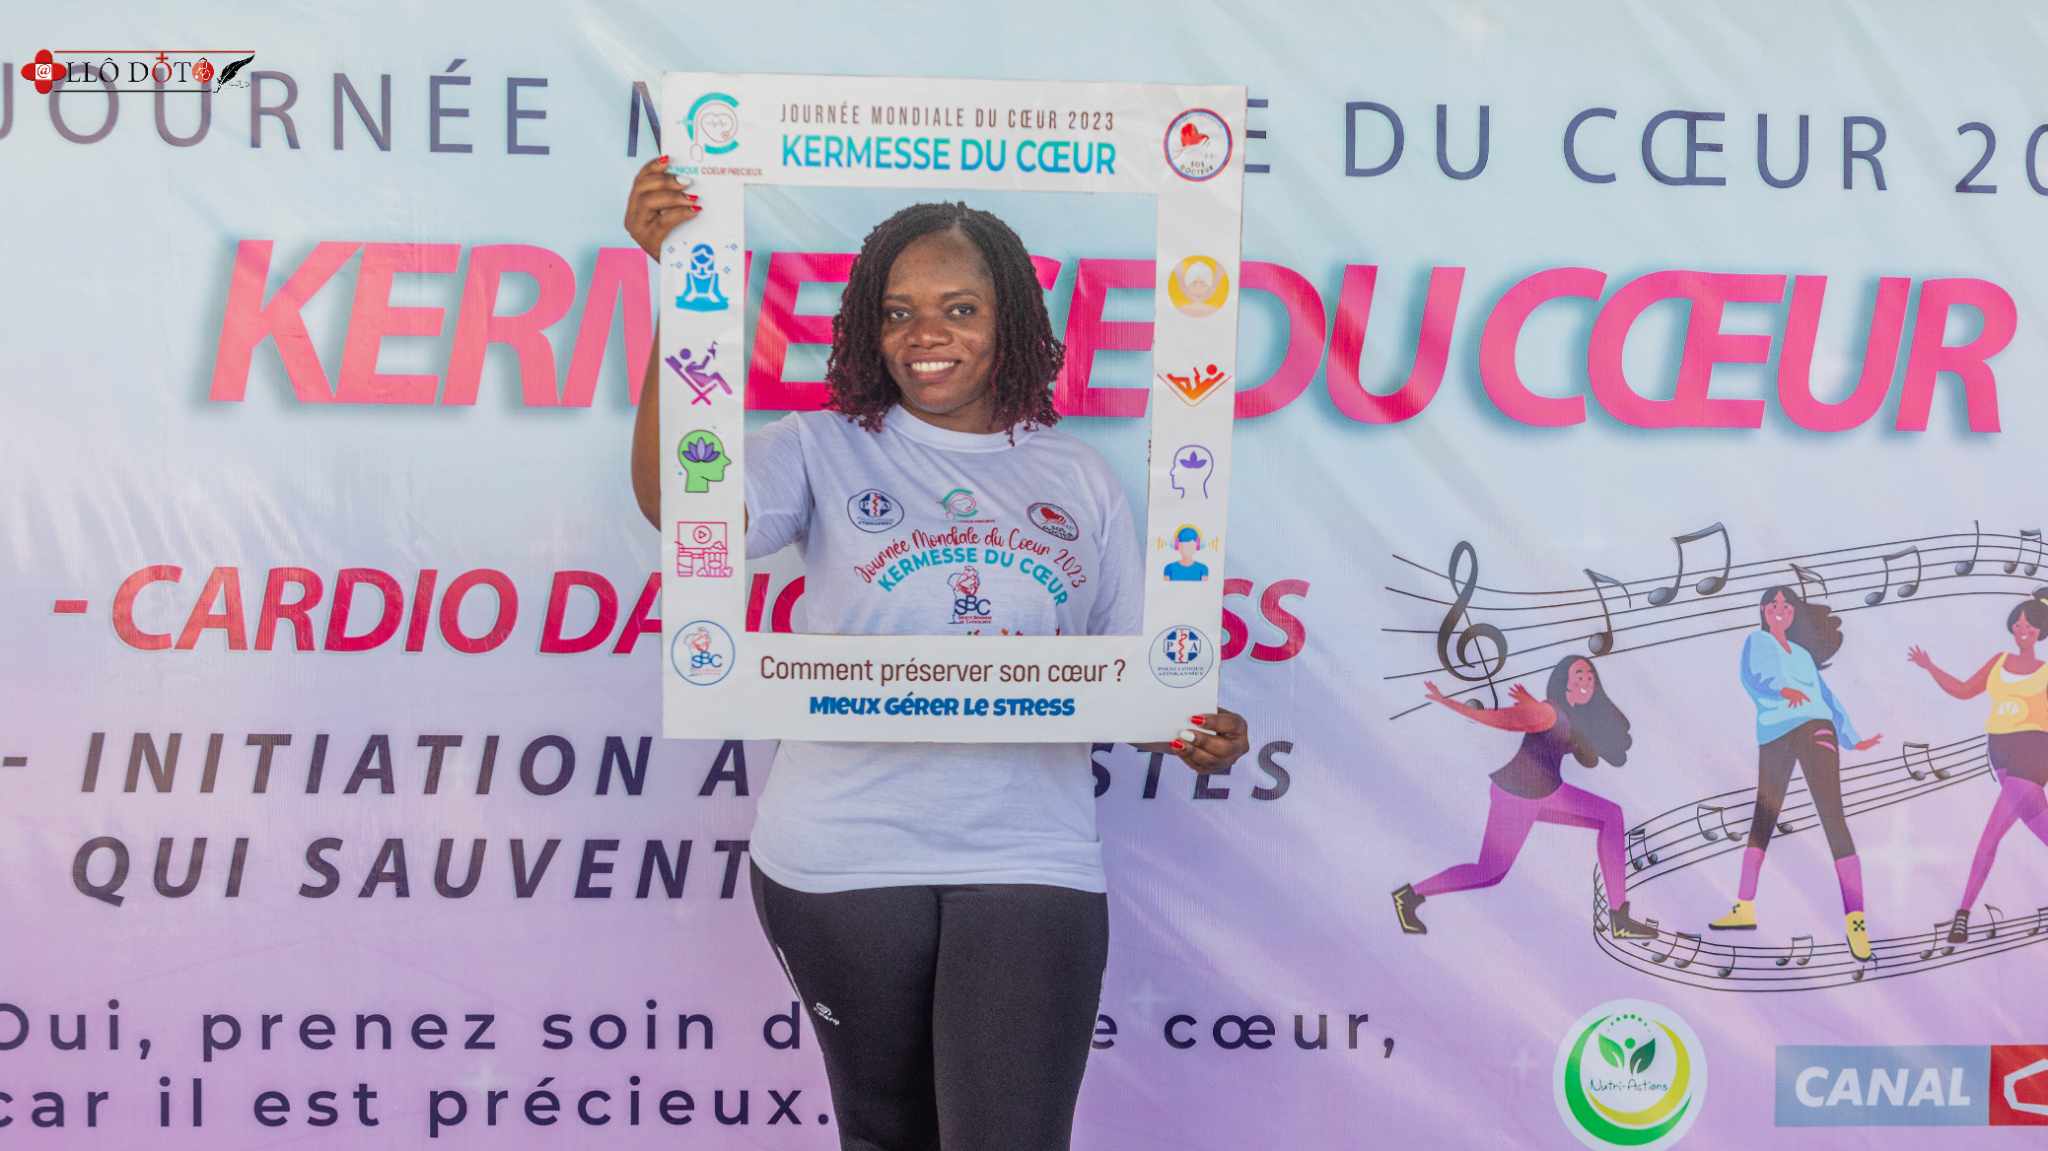 Joyce Hounmènou, Médecin Cardiologue Promotrice de la Clinique Coeur Précieux - Journée mondiale du coeur au Bénin